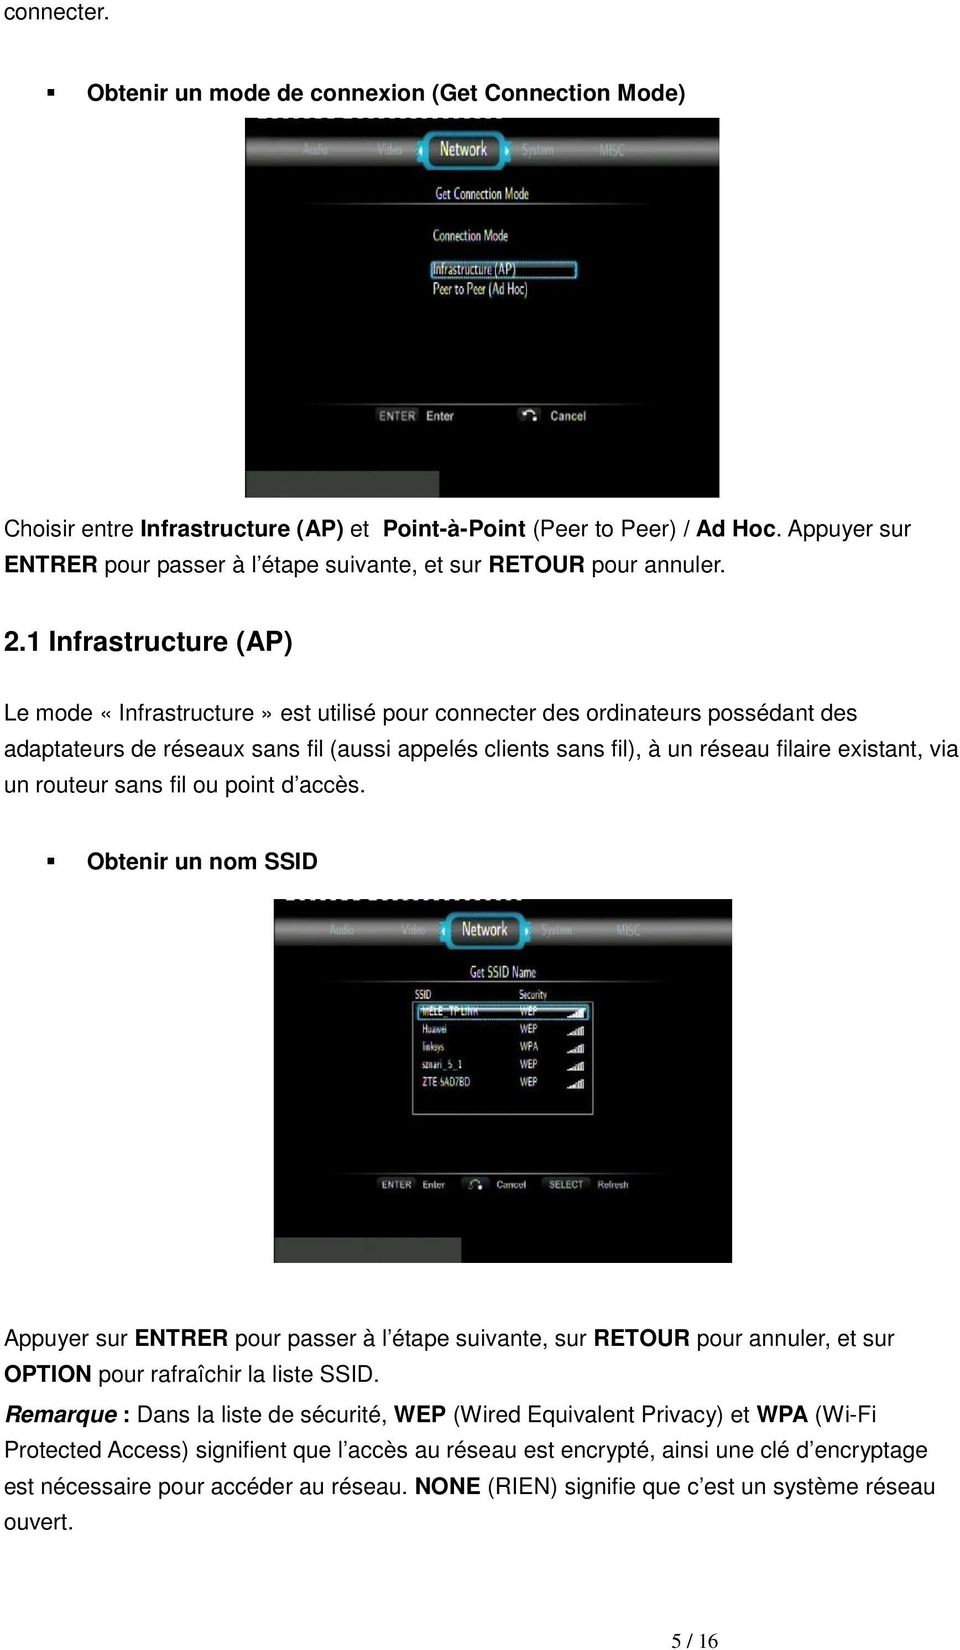 1 Infrastructure (AP) Le mode «Infrastructure» est utilisé pour connecter des ordinateurs possédant des adaptateurs de réseaux sans fil (aussi appelés clients sans fil), à un réseau filaire existant,